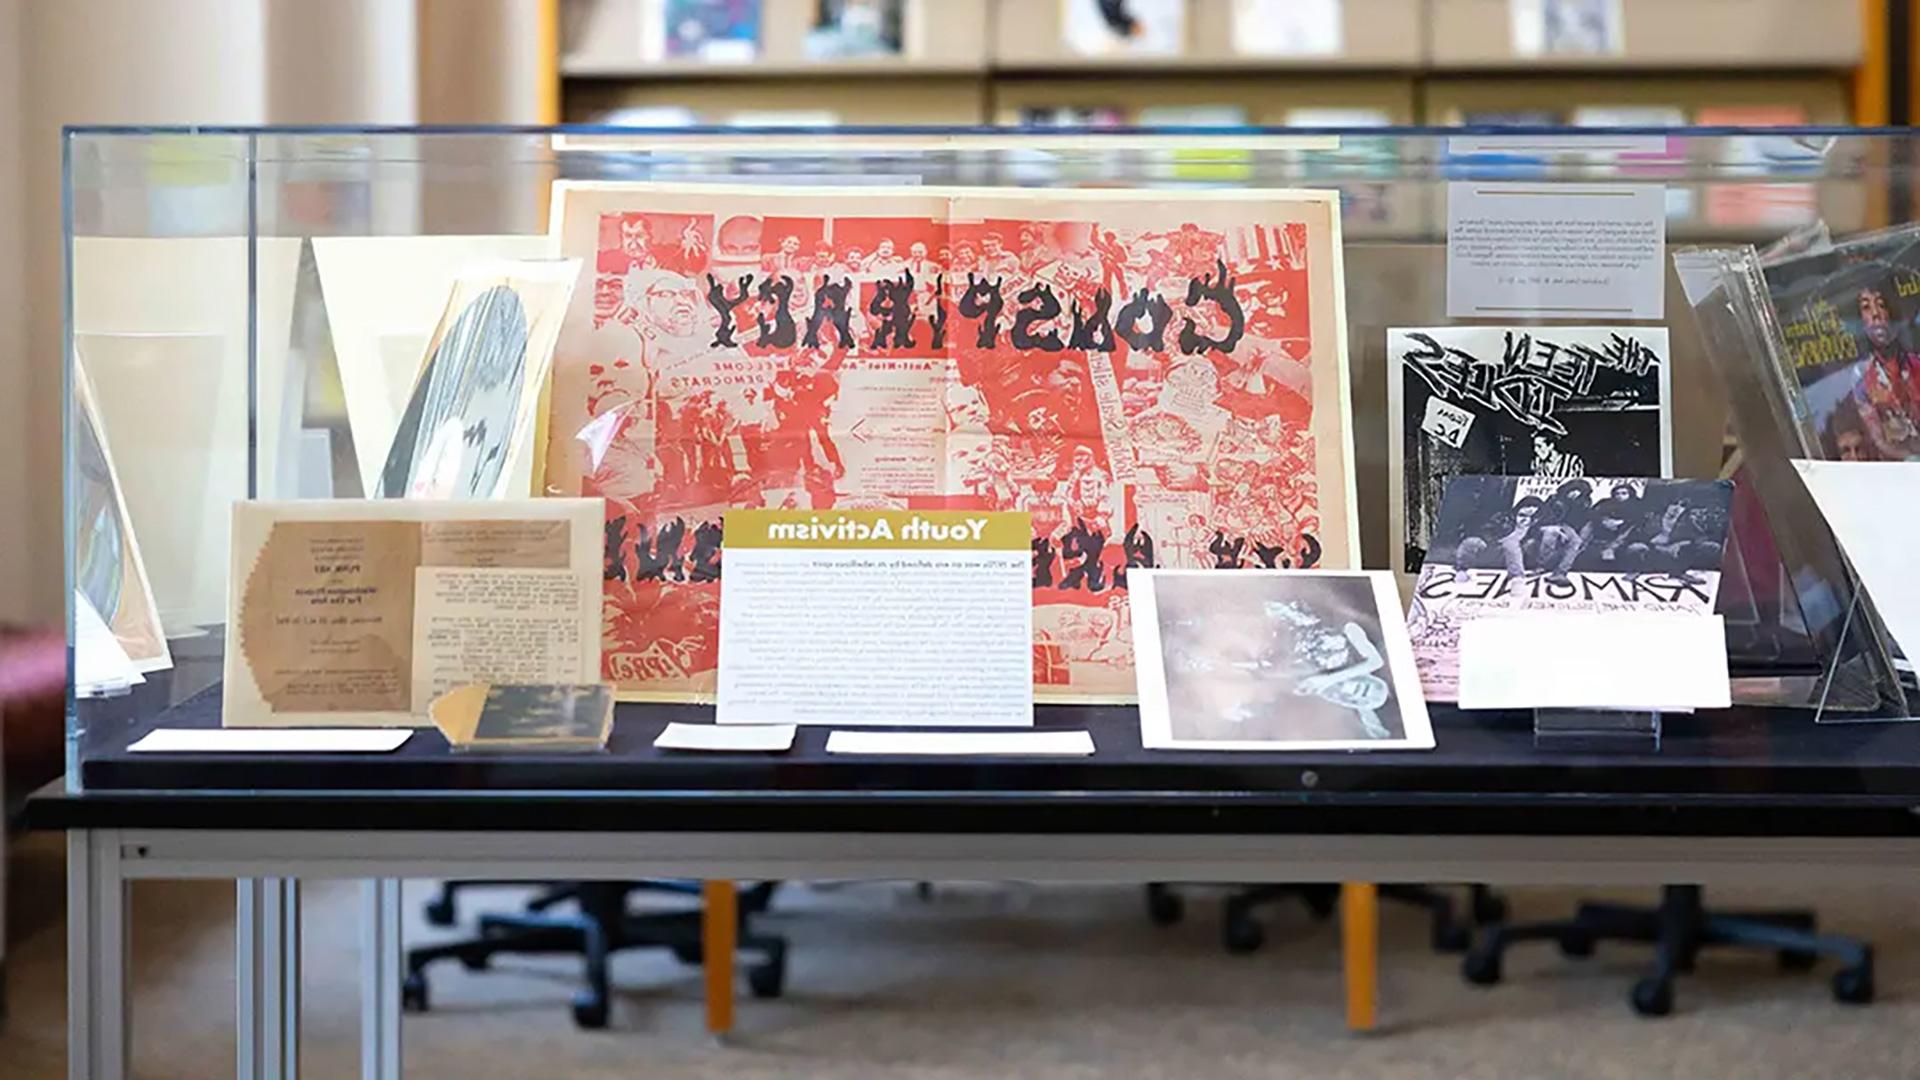 在《反主流文化之声》中,这是米歇尔·史密斯表演艺术图书馆的一个新展览, 参加第一年创新和研究体验项目的本科生从大学档案中选择了反映20世纪70年代音乐的社会和文化主题的物品. (左:来自华盛顿特区的一篇文章.C.(英国的另类报纸《水银时报》).